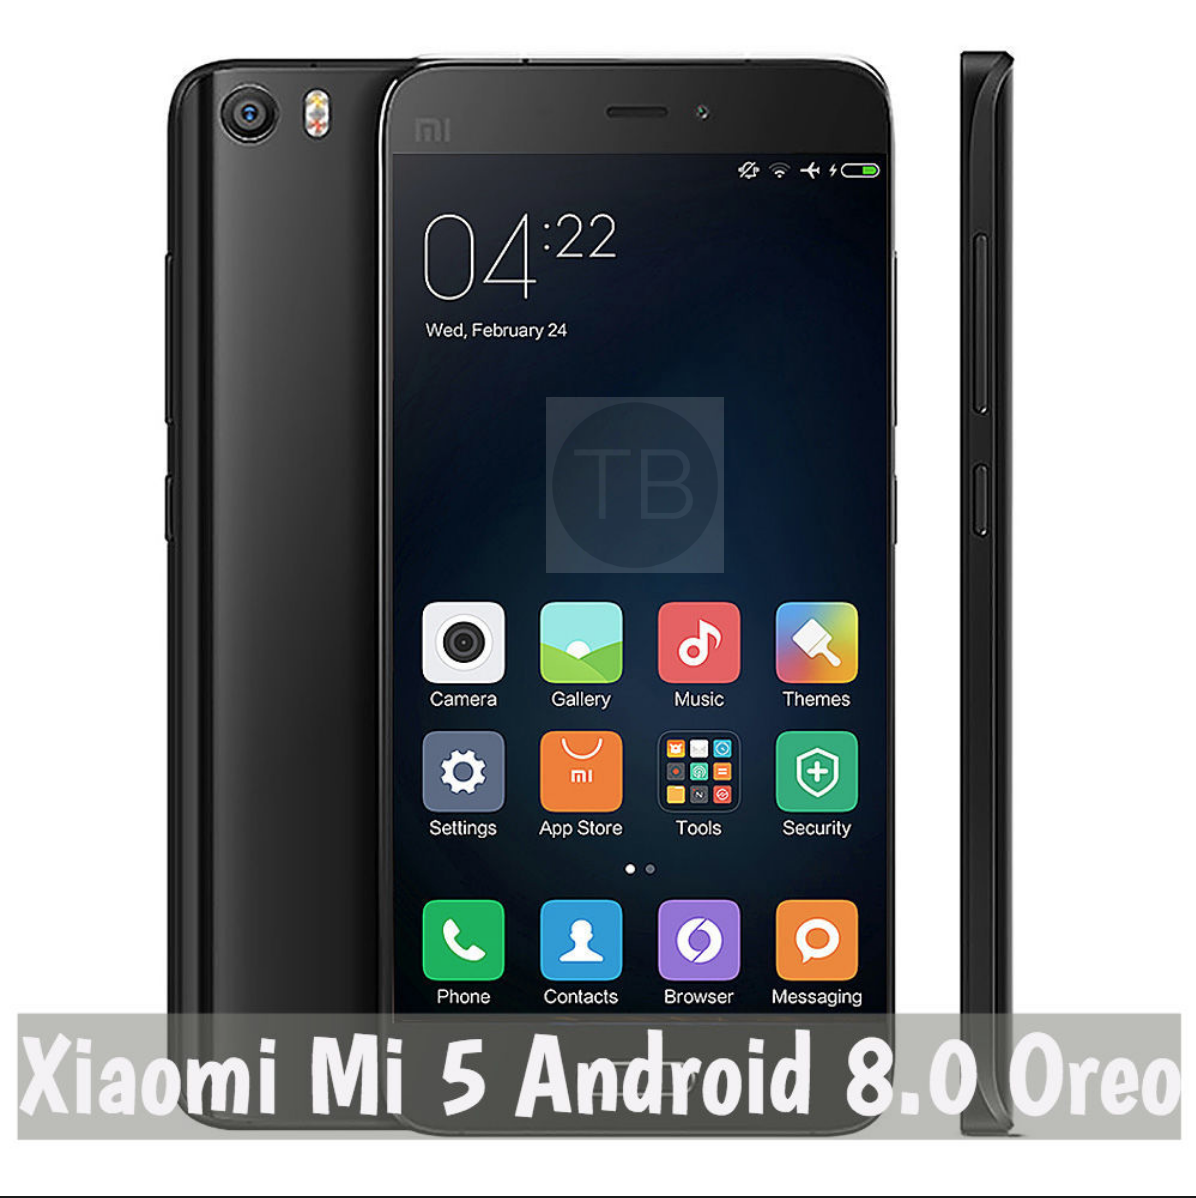 Xiaomi Mi 5 Android 8.0 Oreo